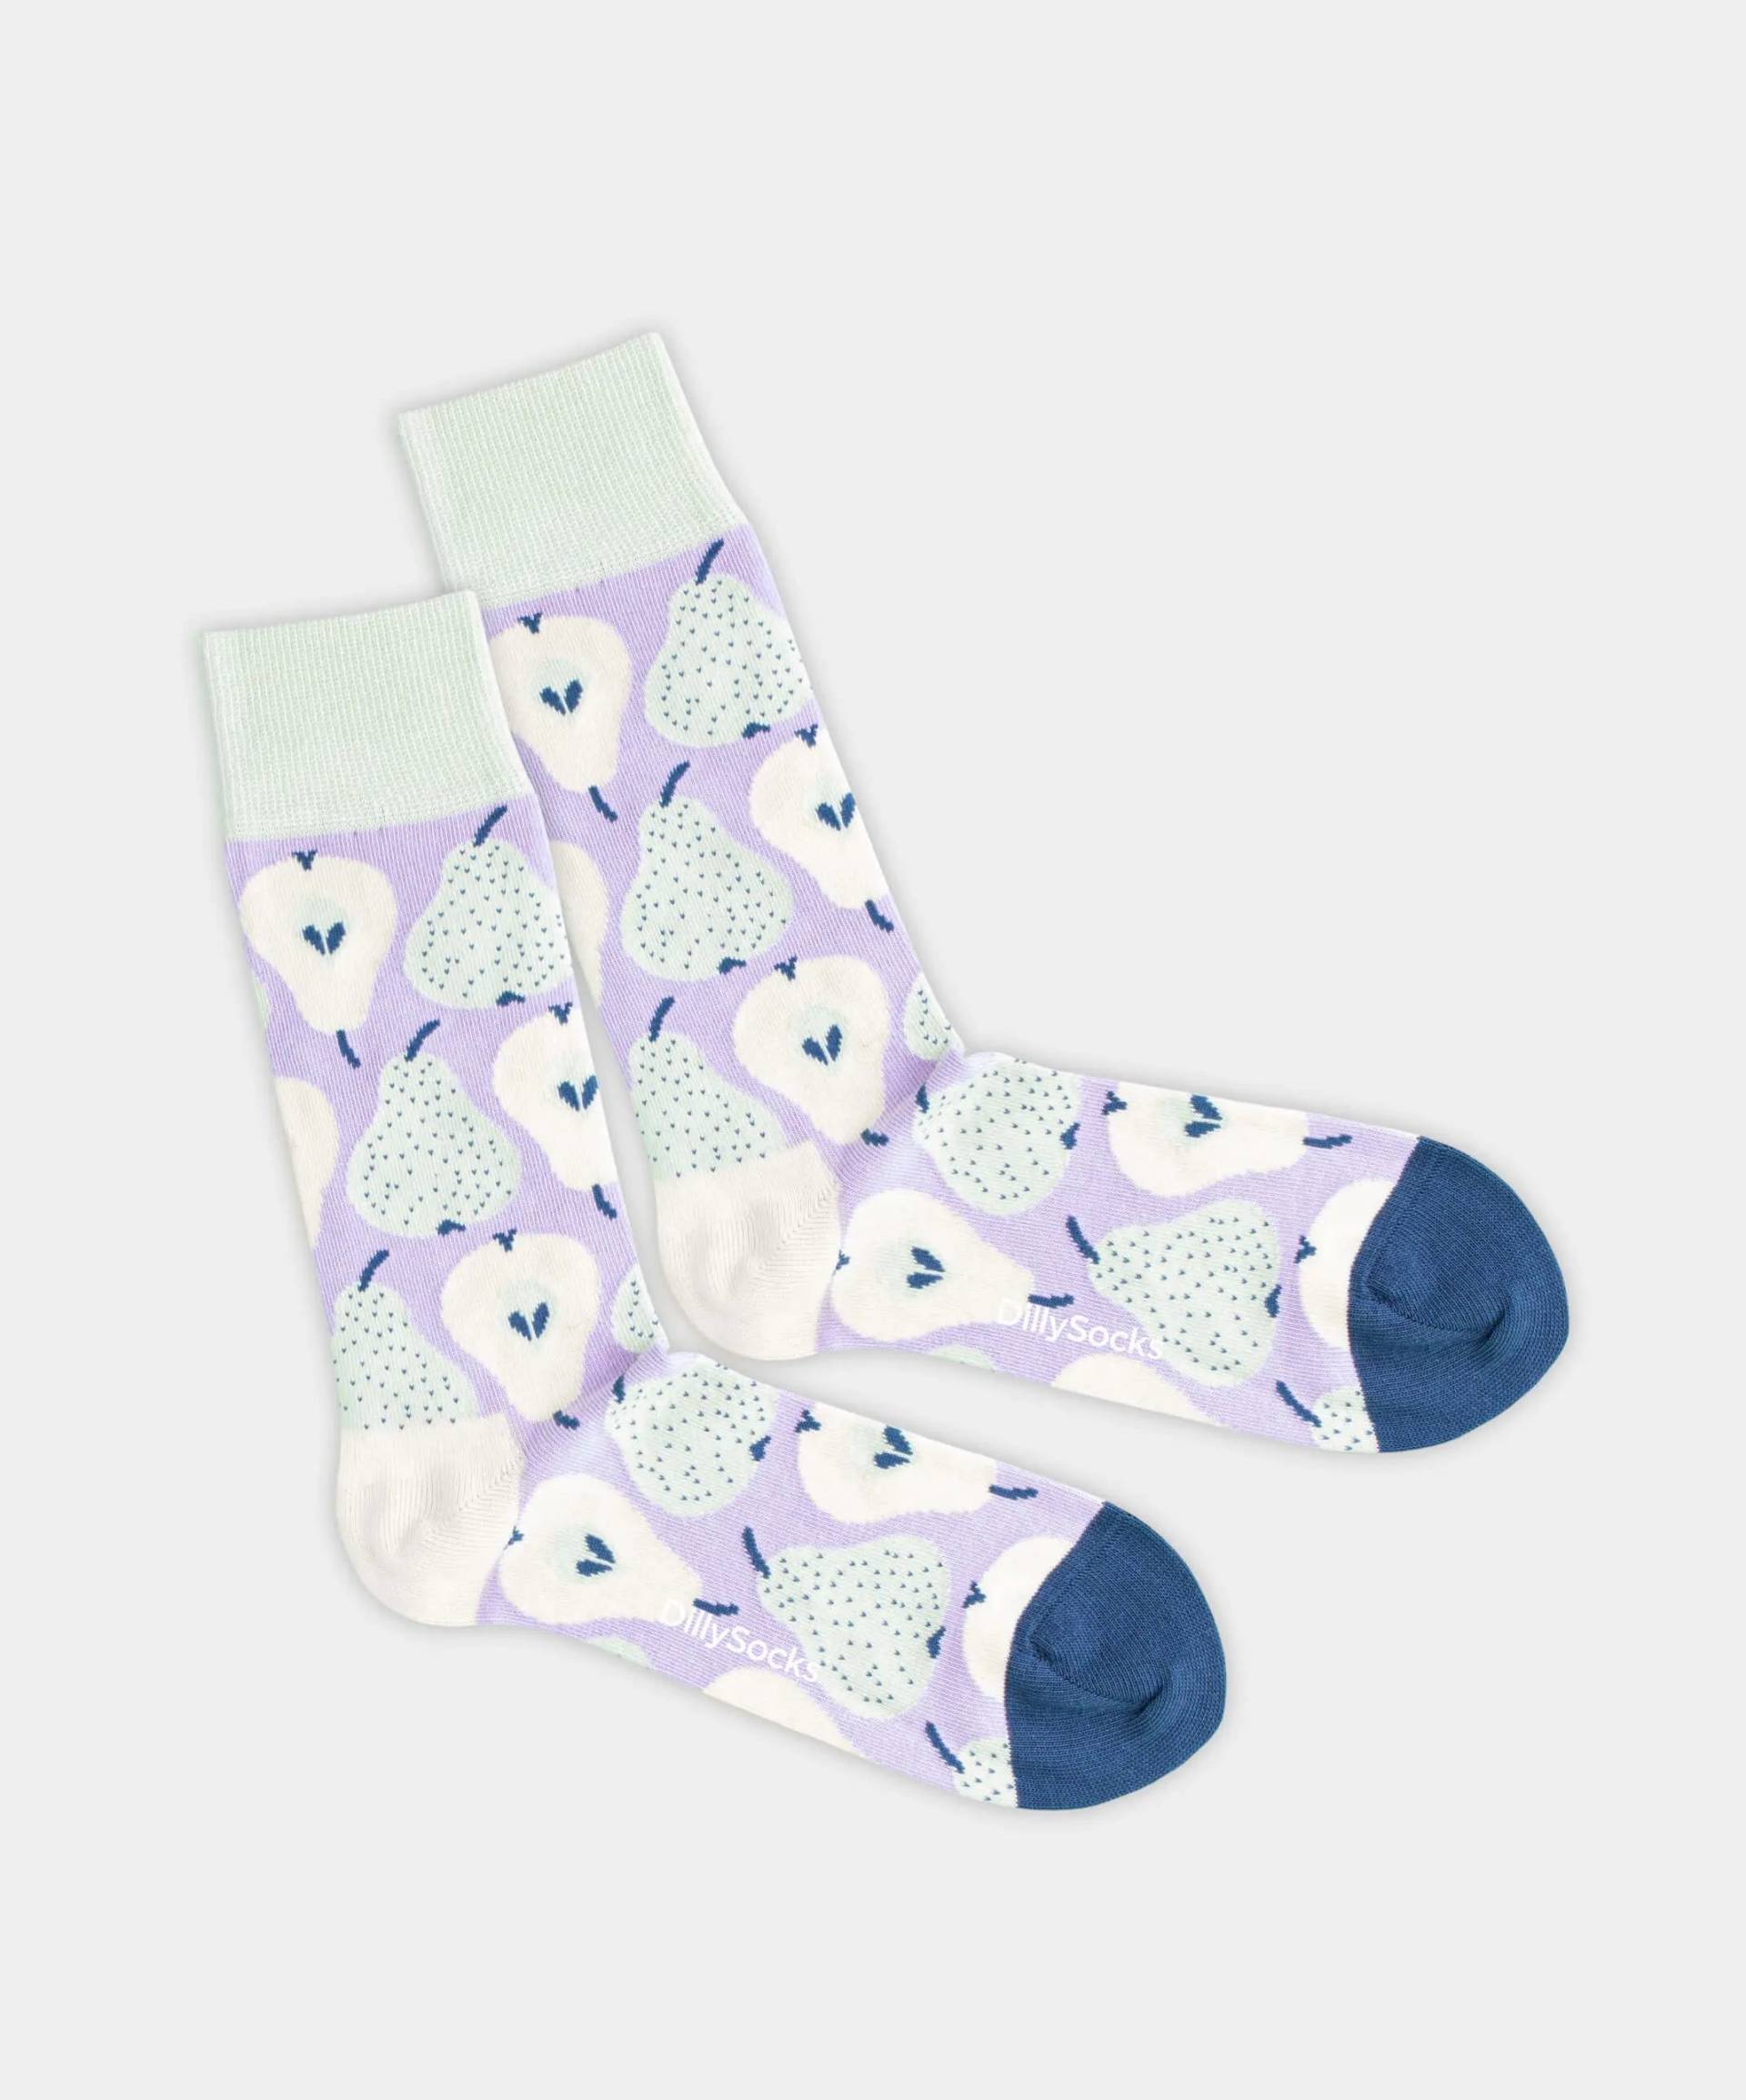 - Socken in Violett mit Früchte Motiv/Muster von DillySocks